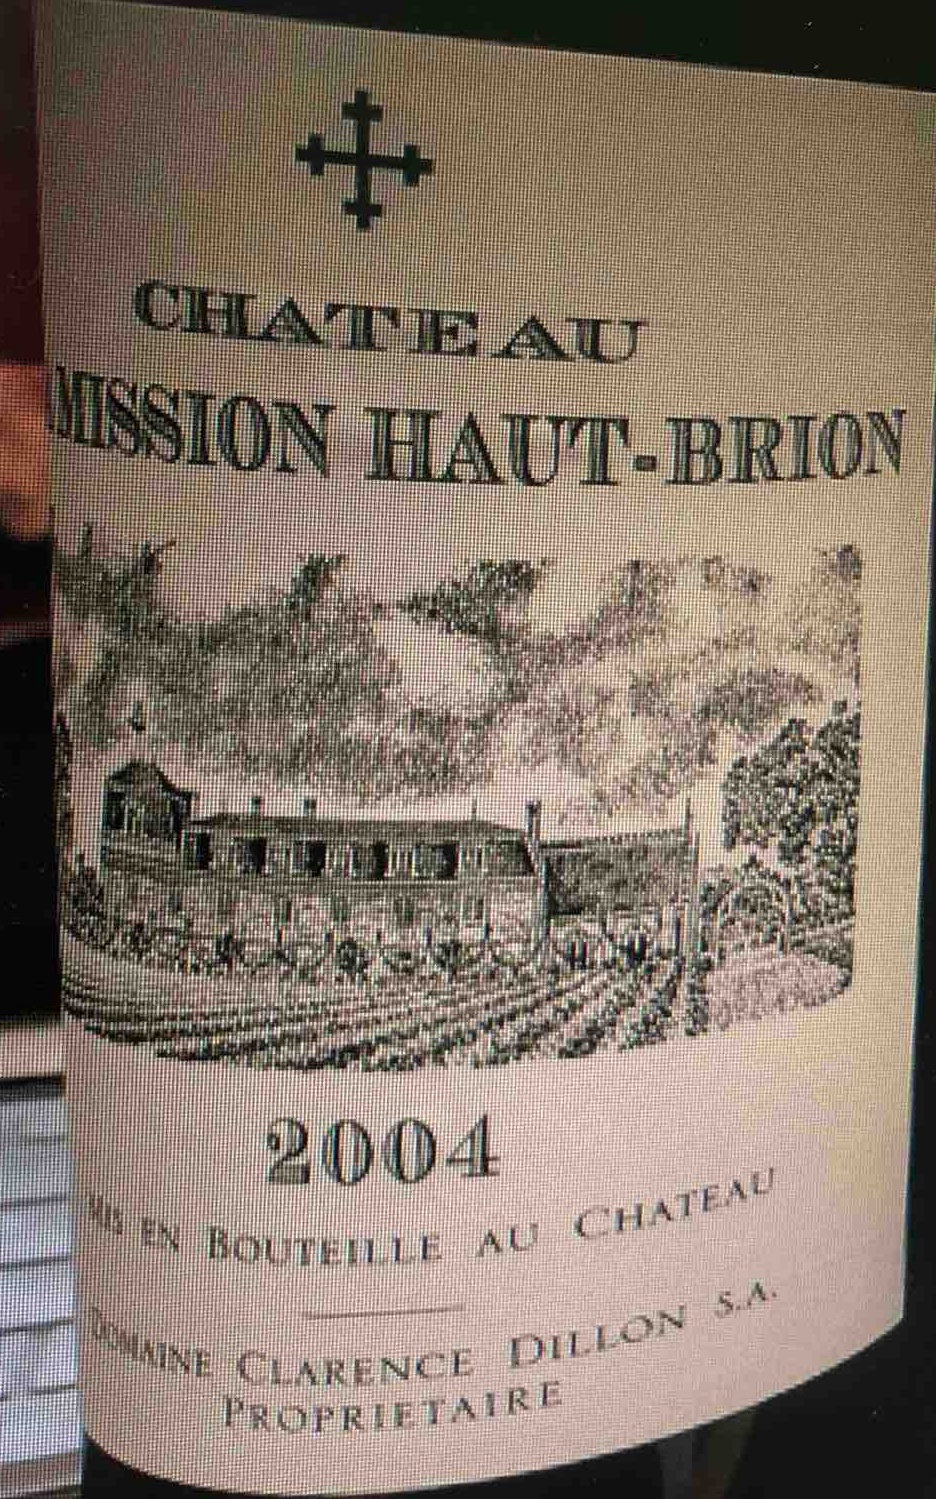 Chateau La Mission Haut Brion 空き瓶2本セット